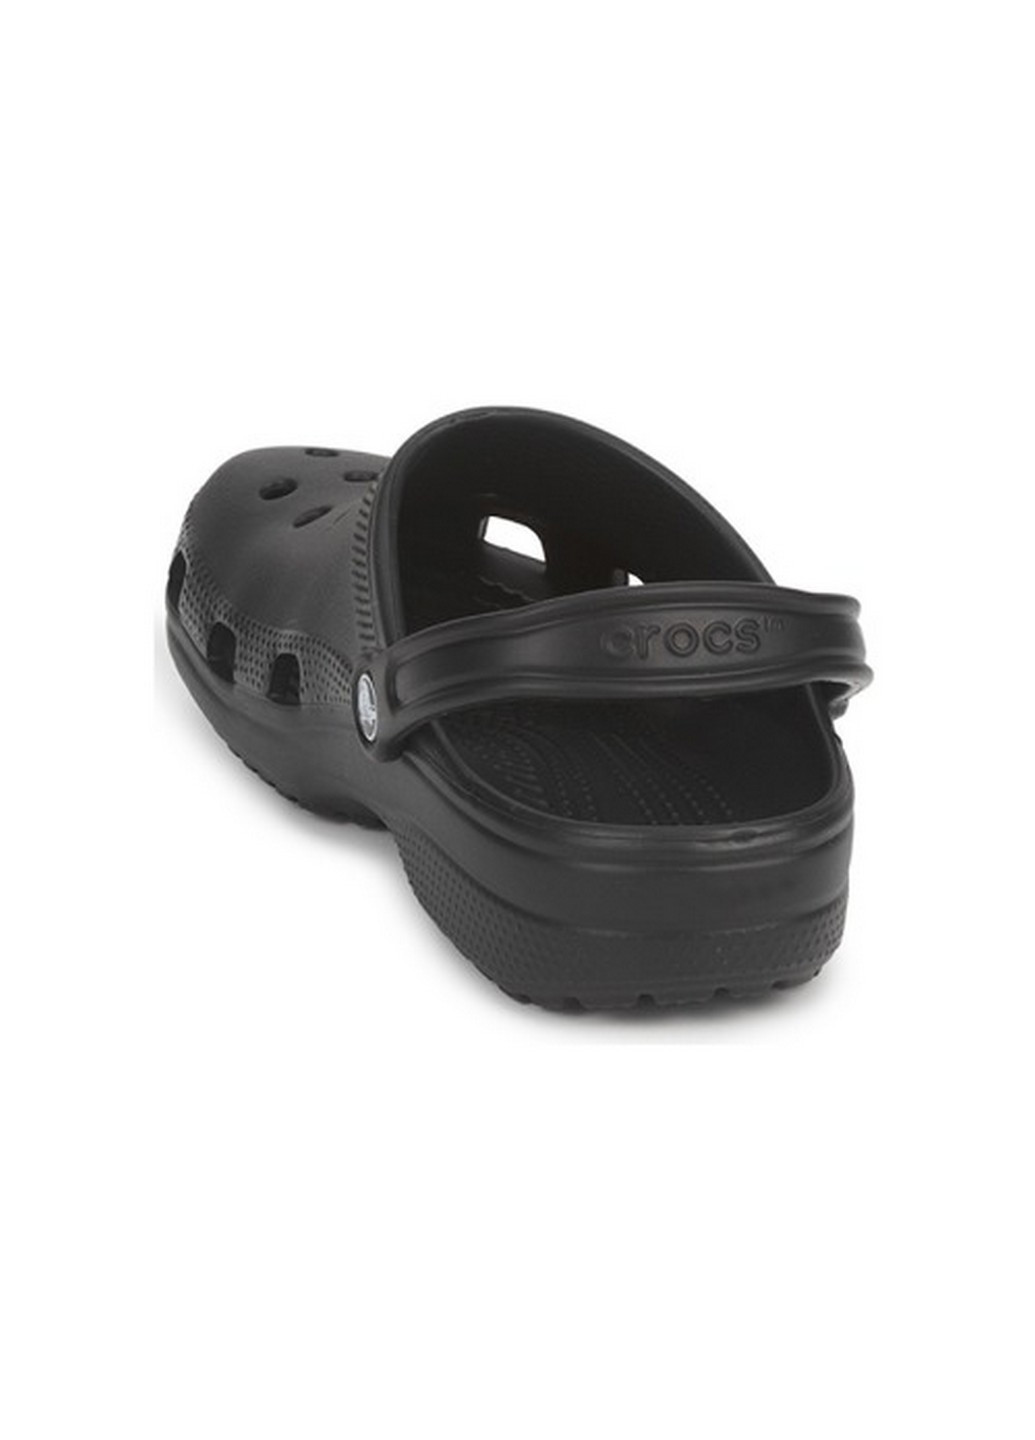 Сабо крокси Crocs classic clog black (257782178)